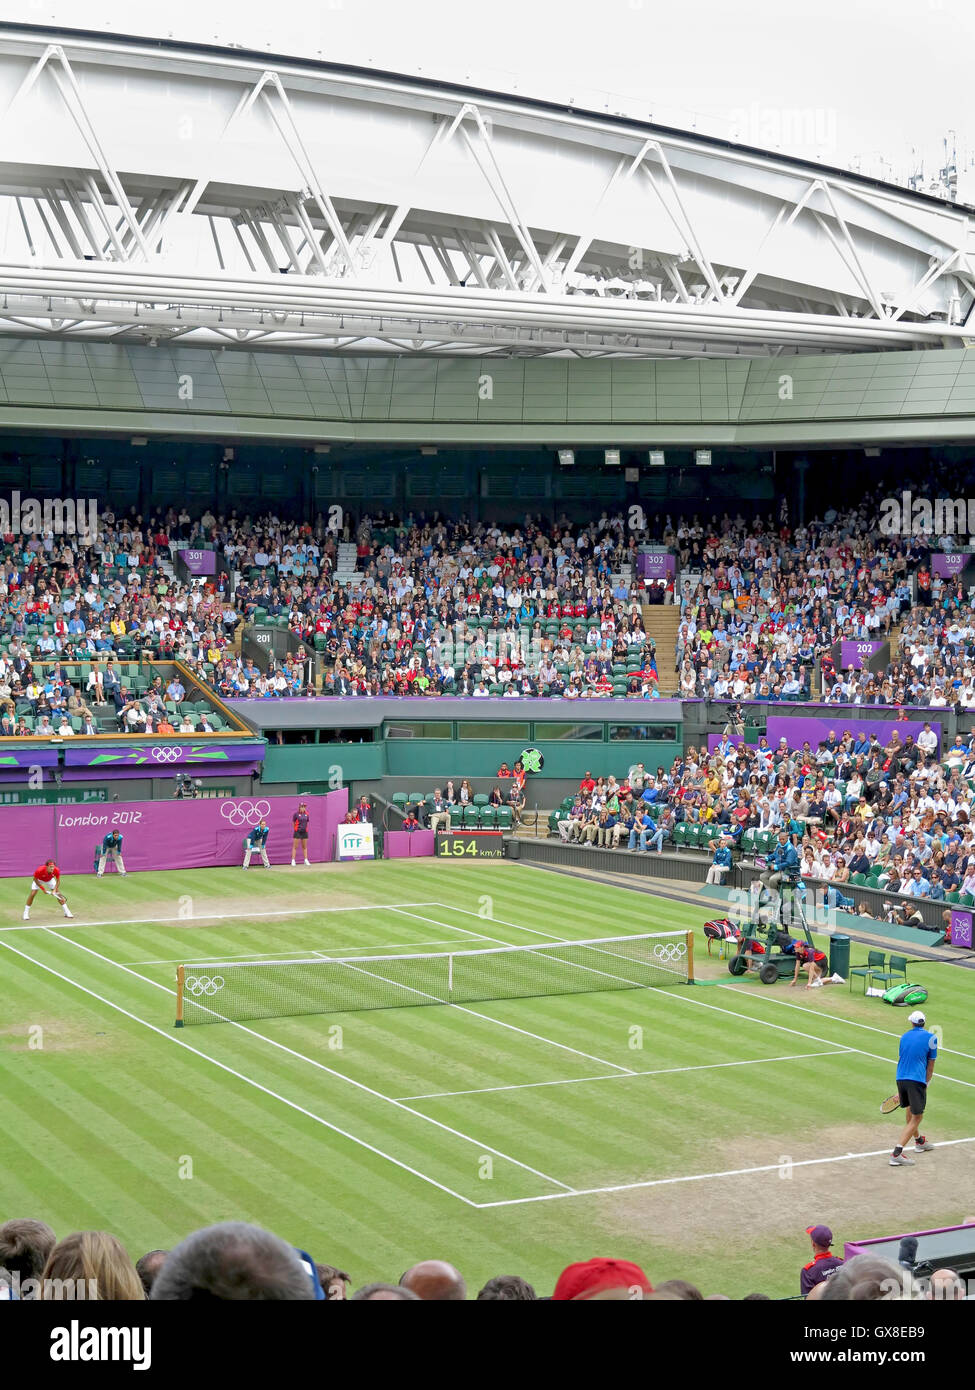 Wimbledon, Angleterre. 2 août 2012. Roger Federer et John Isner lors de leurs matchs en simple aux Jeux olympiques de cet été à Londres Banque D'Images